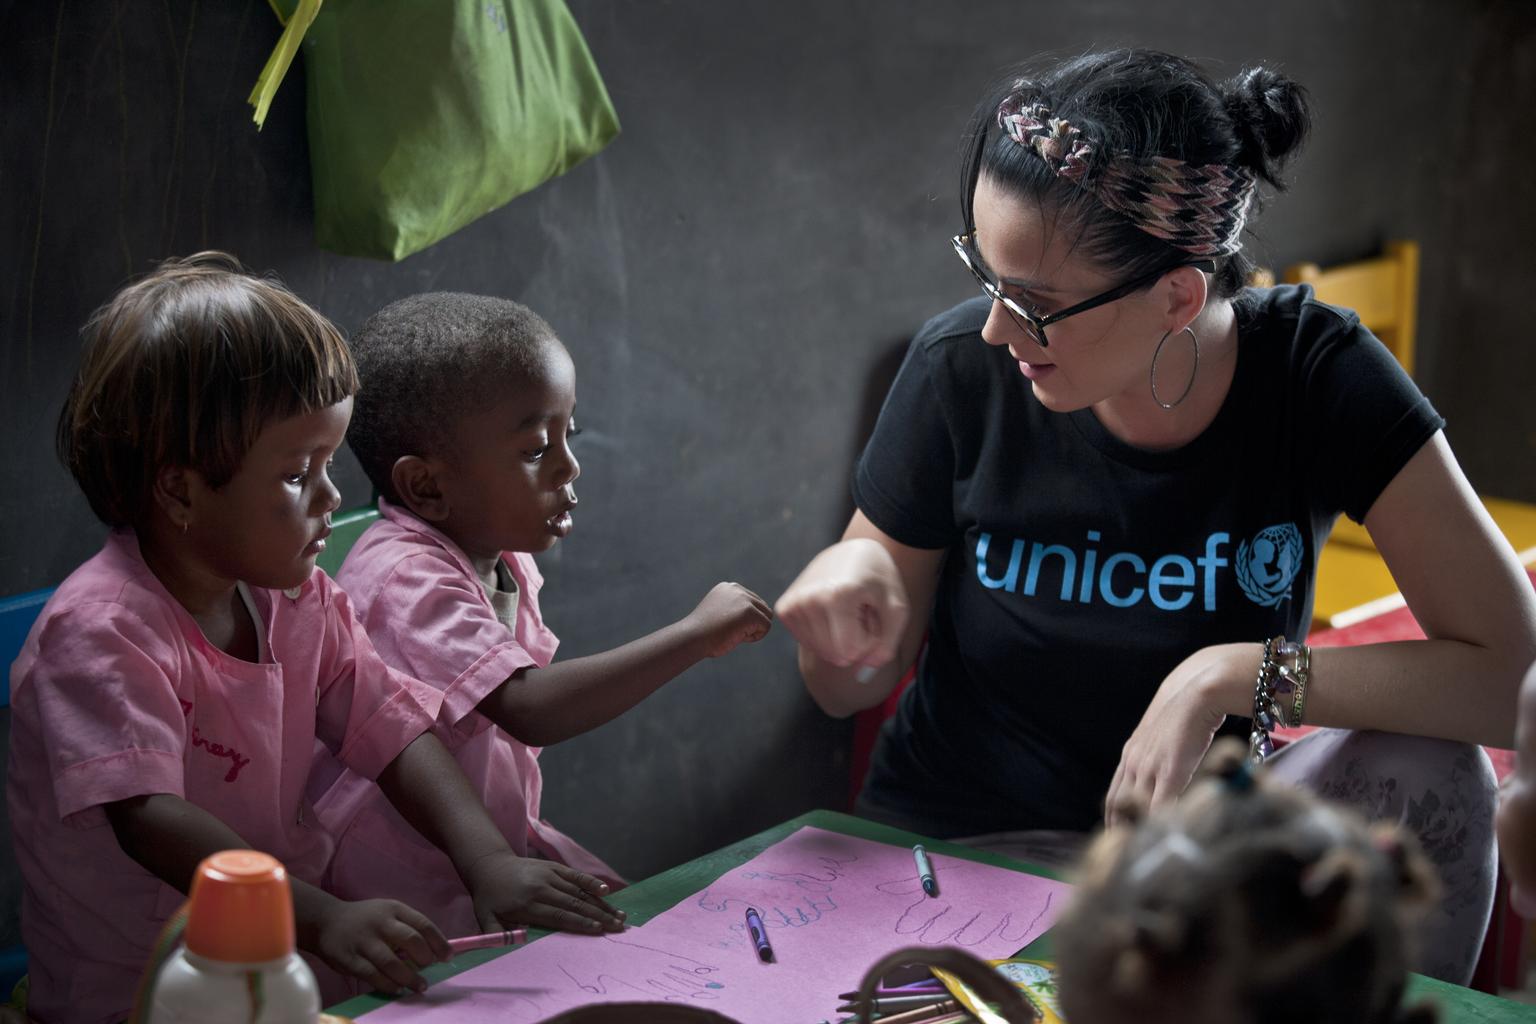 UNICEF: “2030 Yılında 167 Milyon Çocuk Aşırı Yoksulluk Yaşayacak”